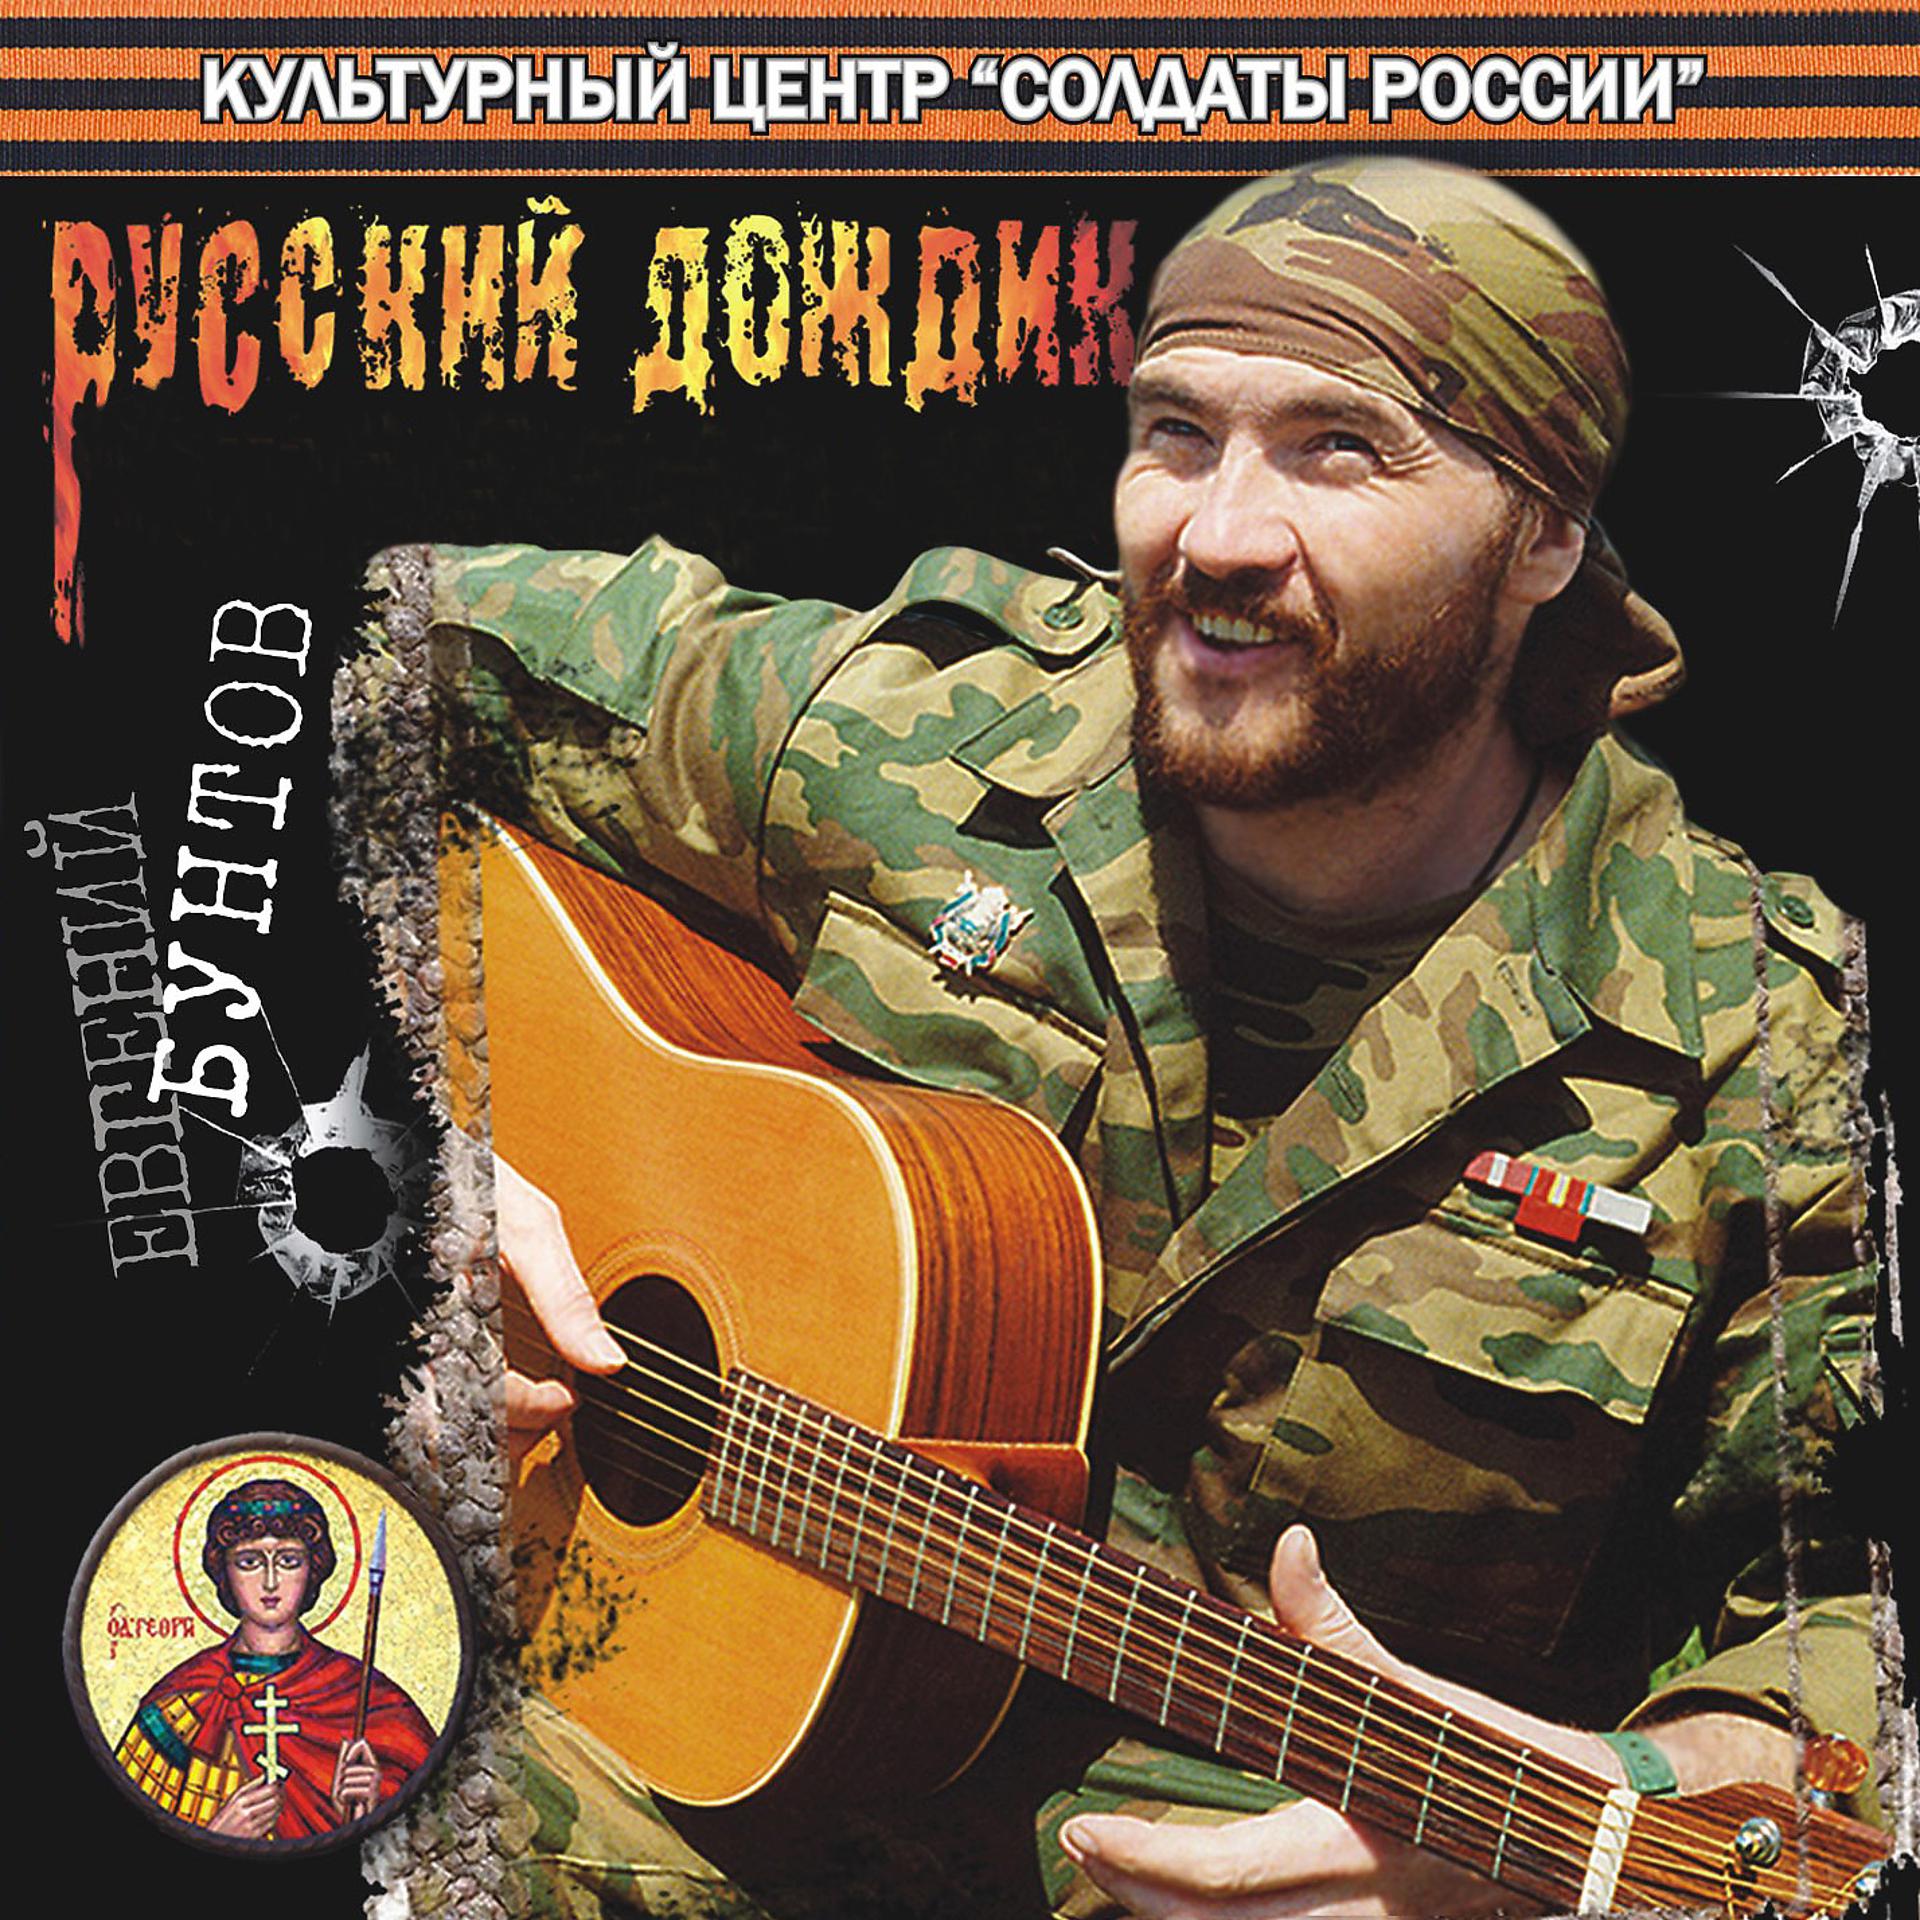 Все песни про чечню. Певцы про Чечню военные. Песни про чеченскую войну. Певцы на войне. Военный исполнитель.